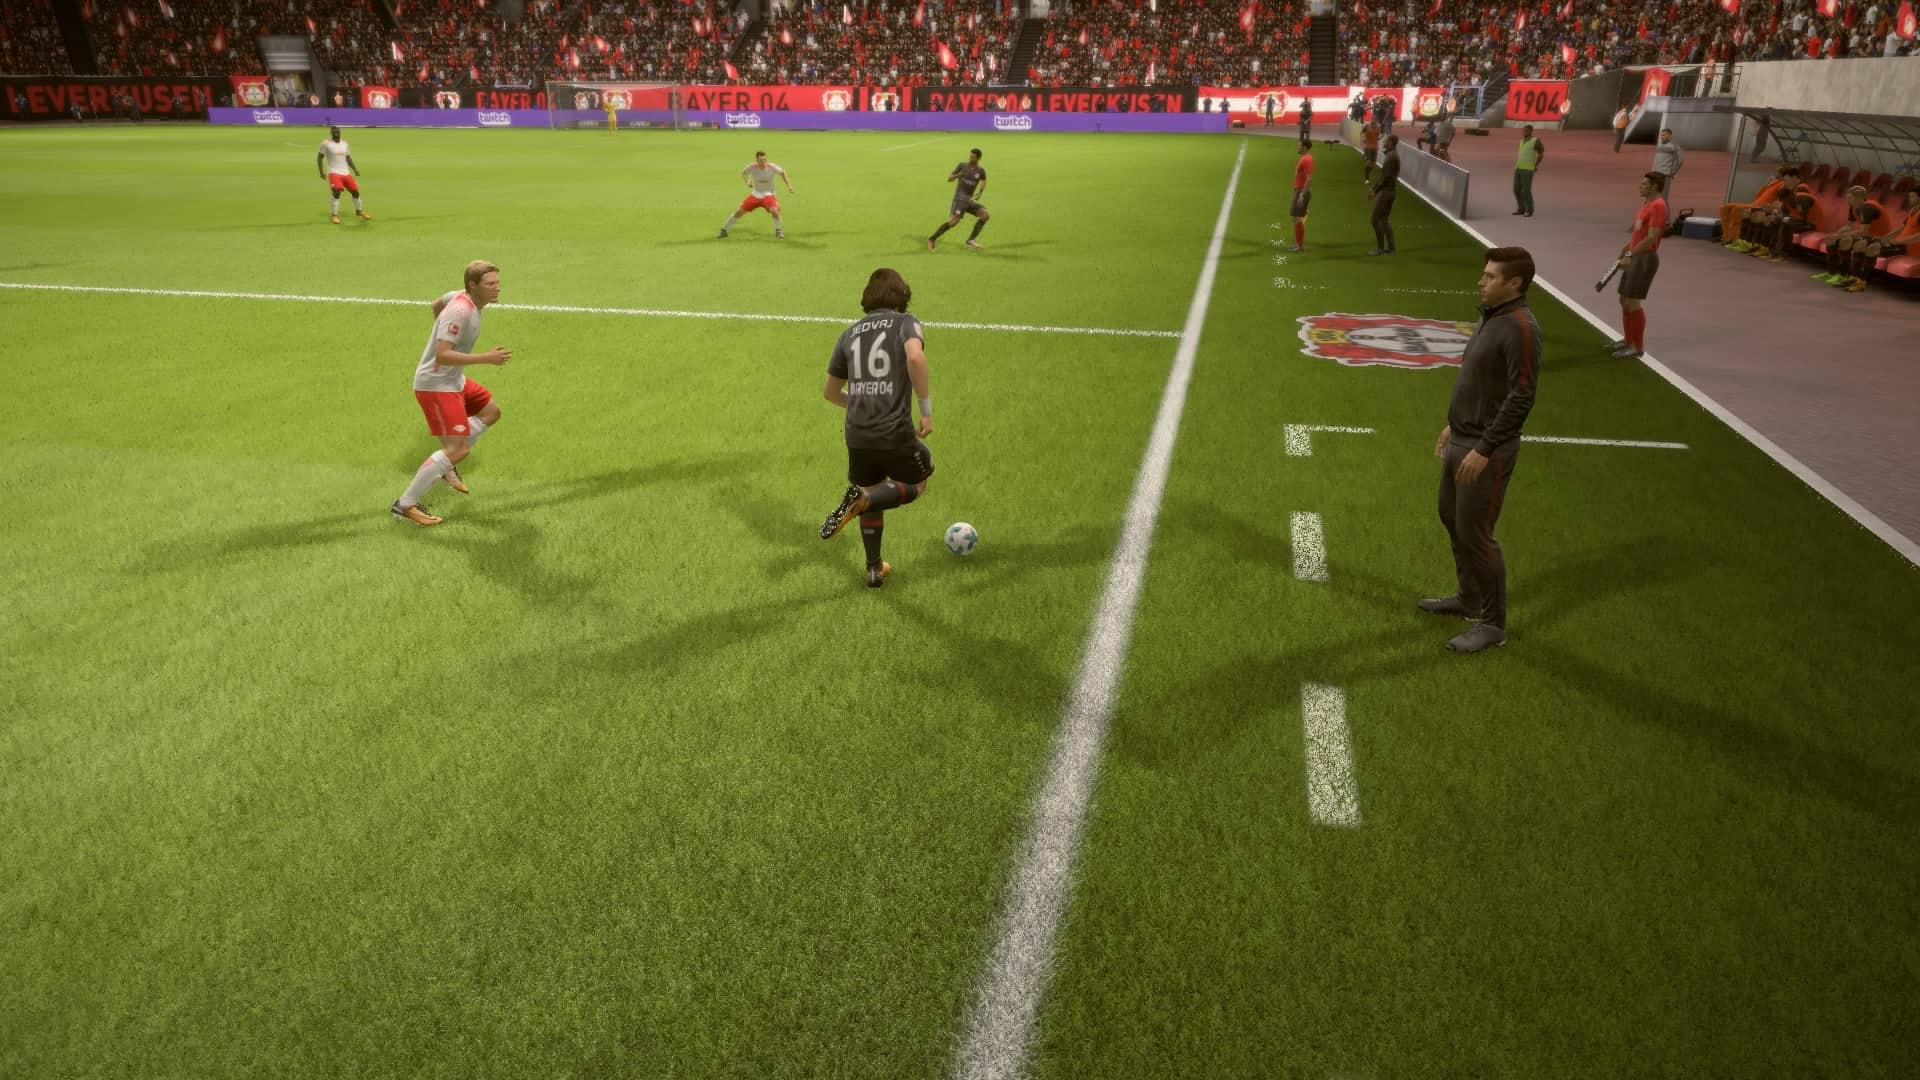 Tin Jedvaj in FIFA 18